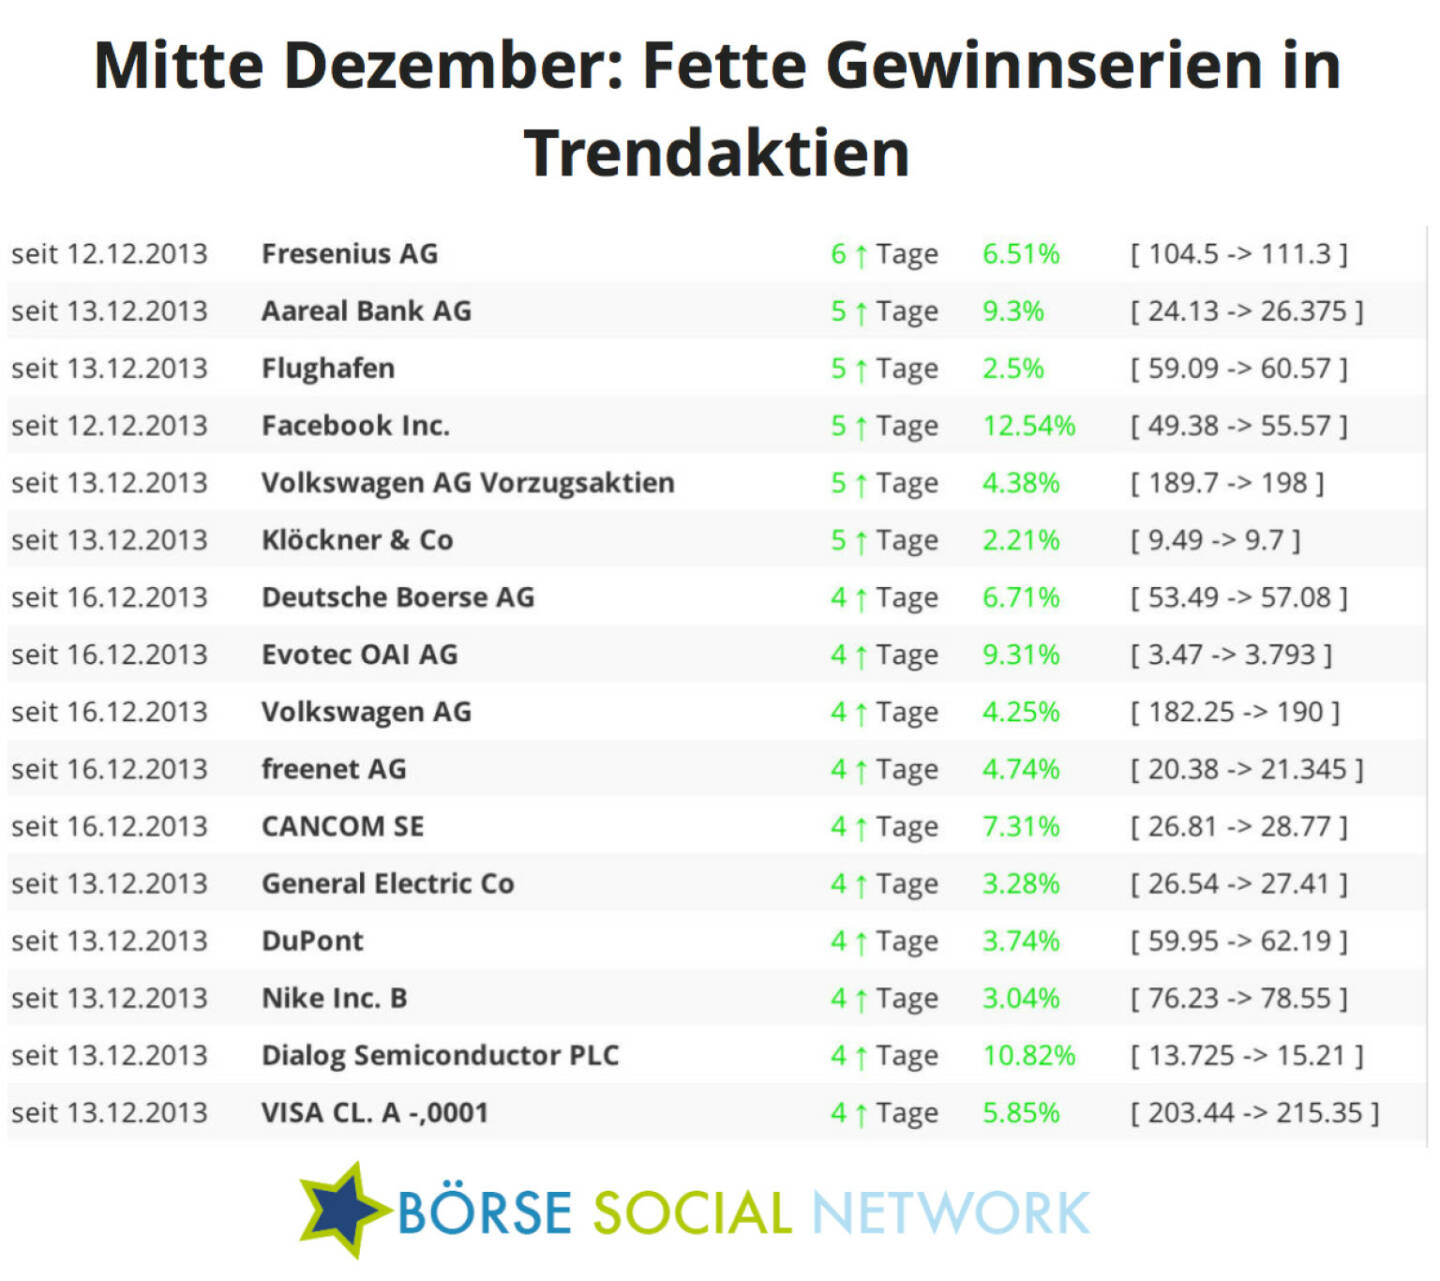 Fresenius steigt bereits seit 6 Handelstagen; Aareal, Flughafen, Facebook, VW und Klöckner seit 5 Tagen